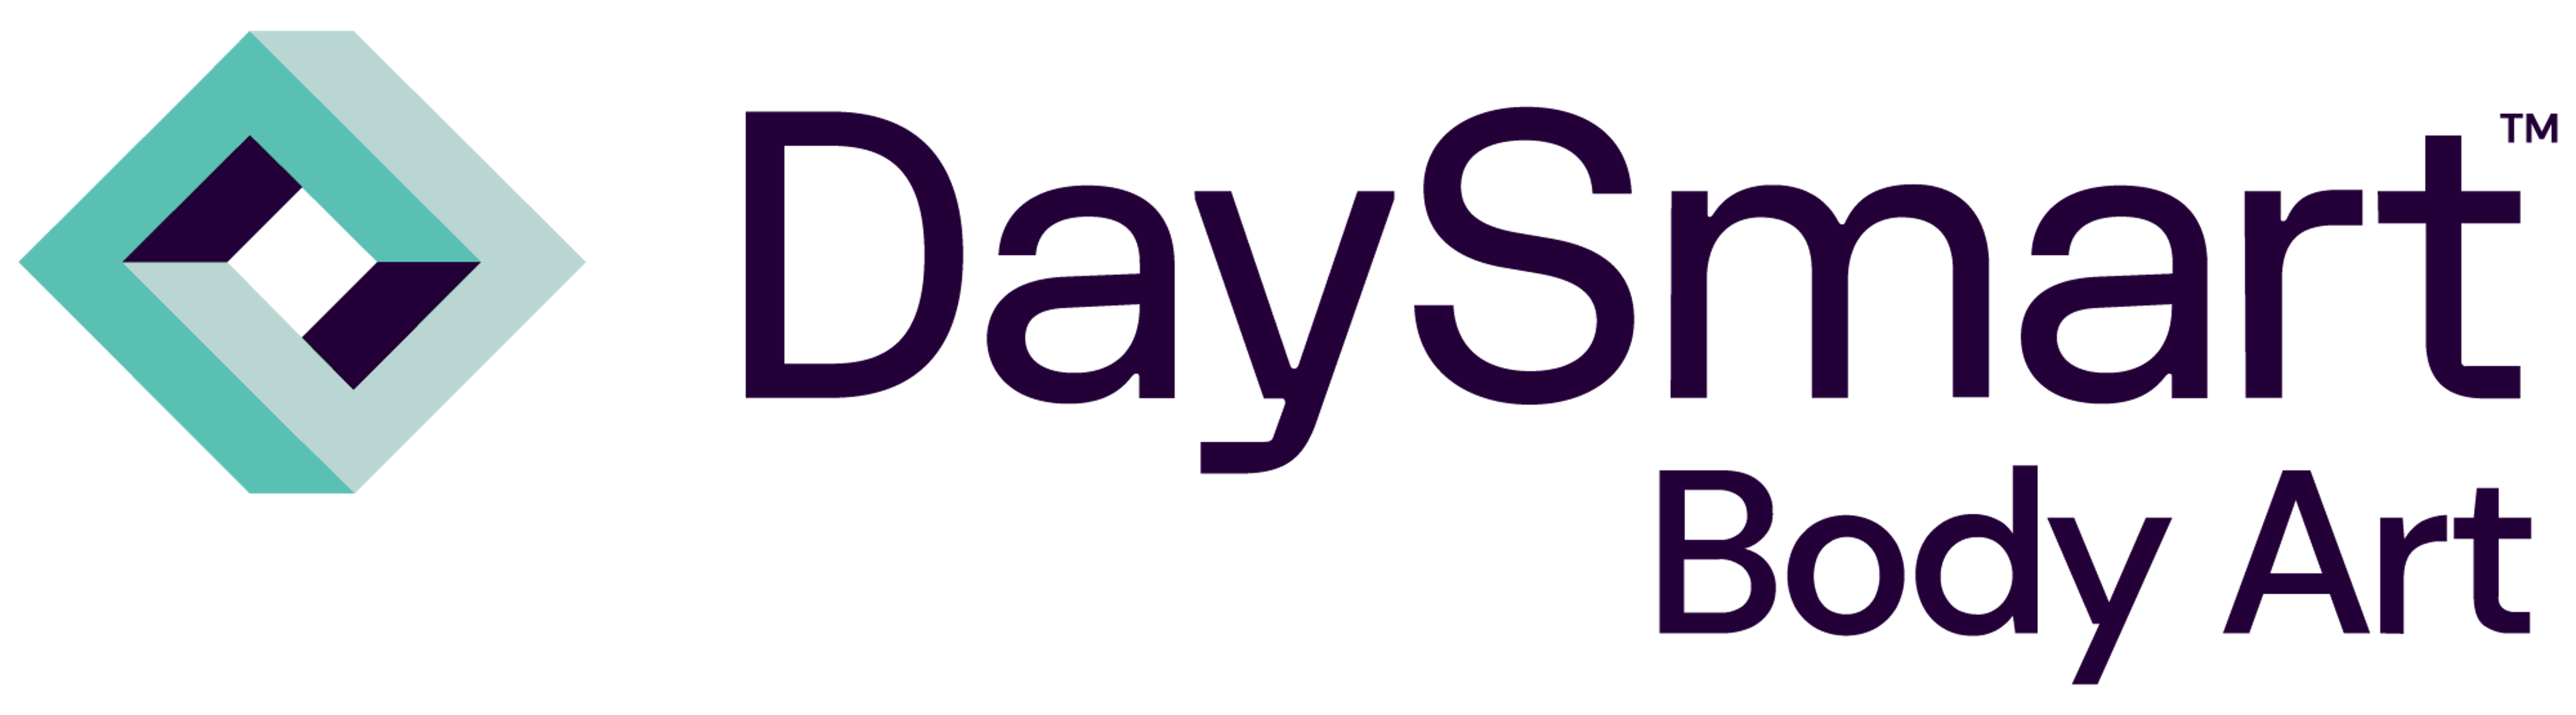 DaySmart Body Art Logo